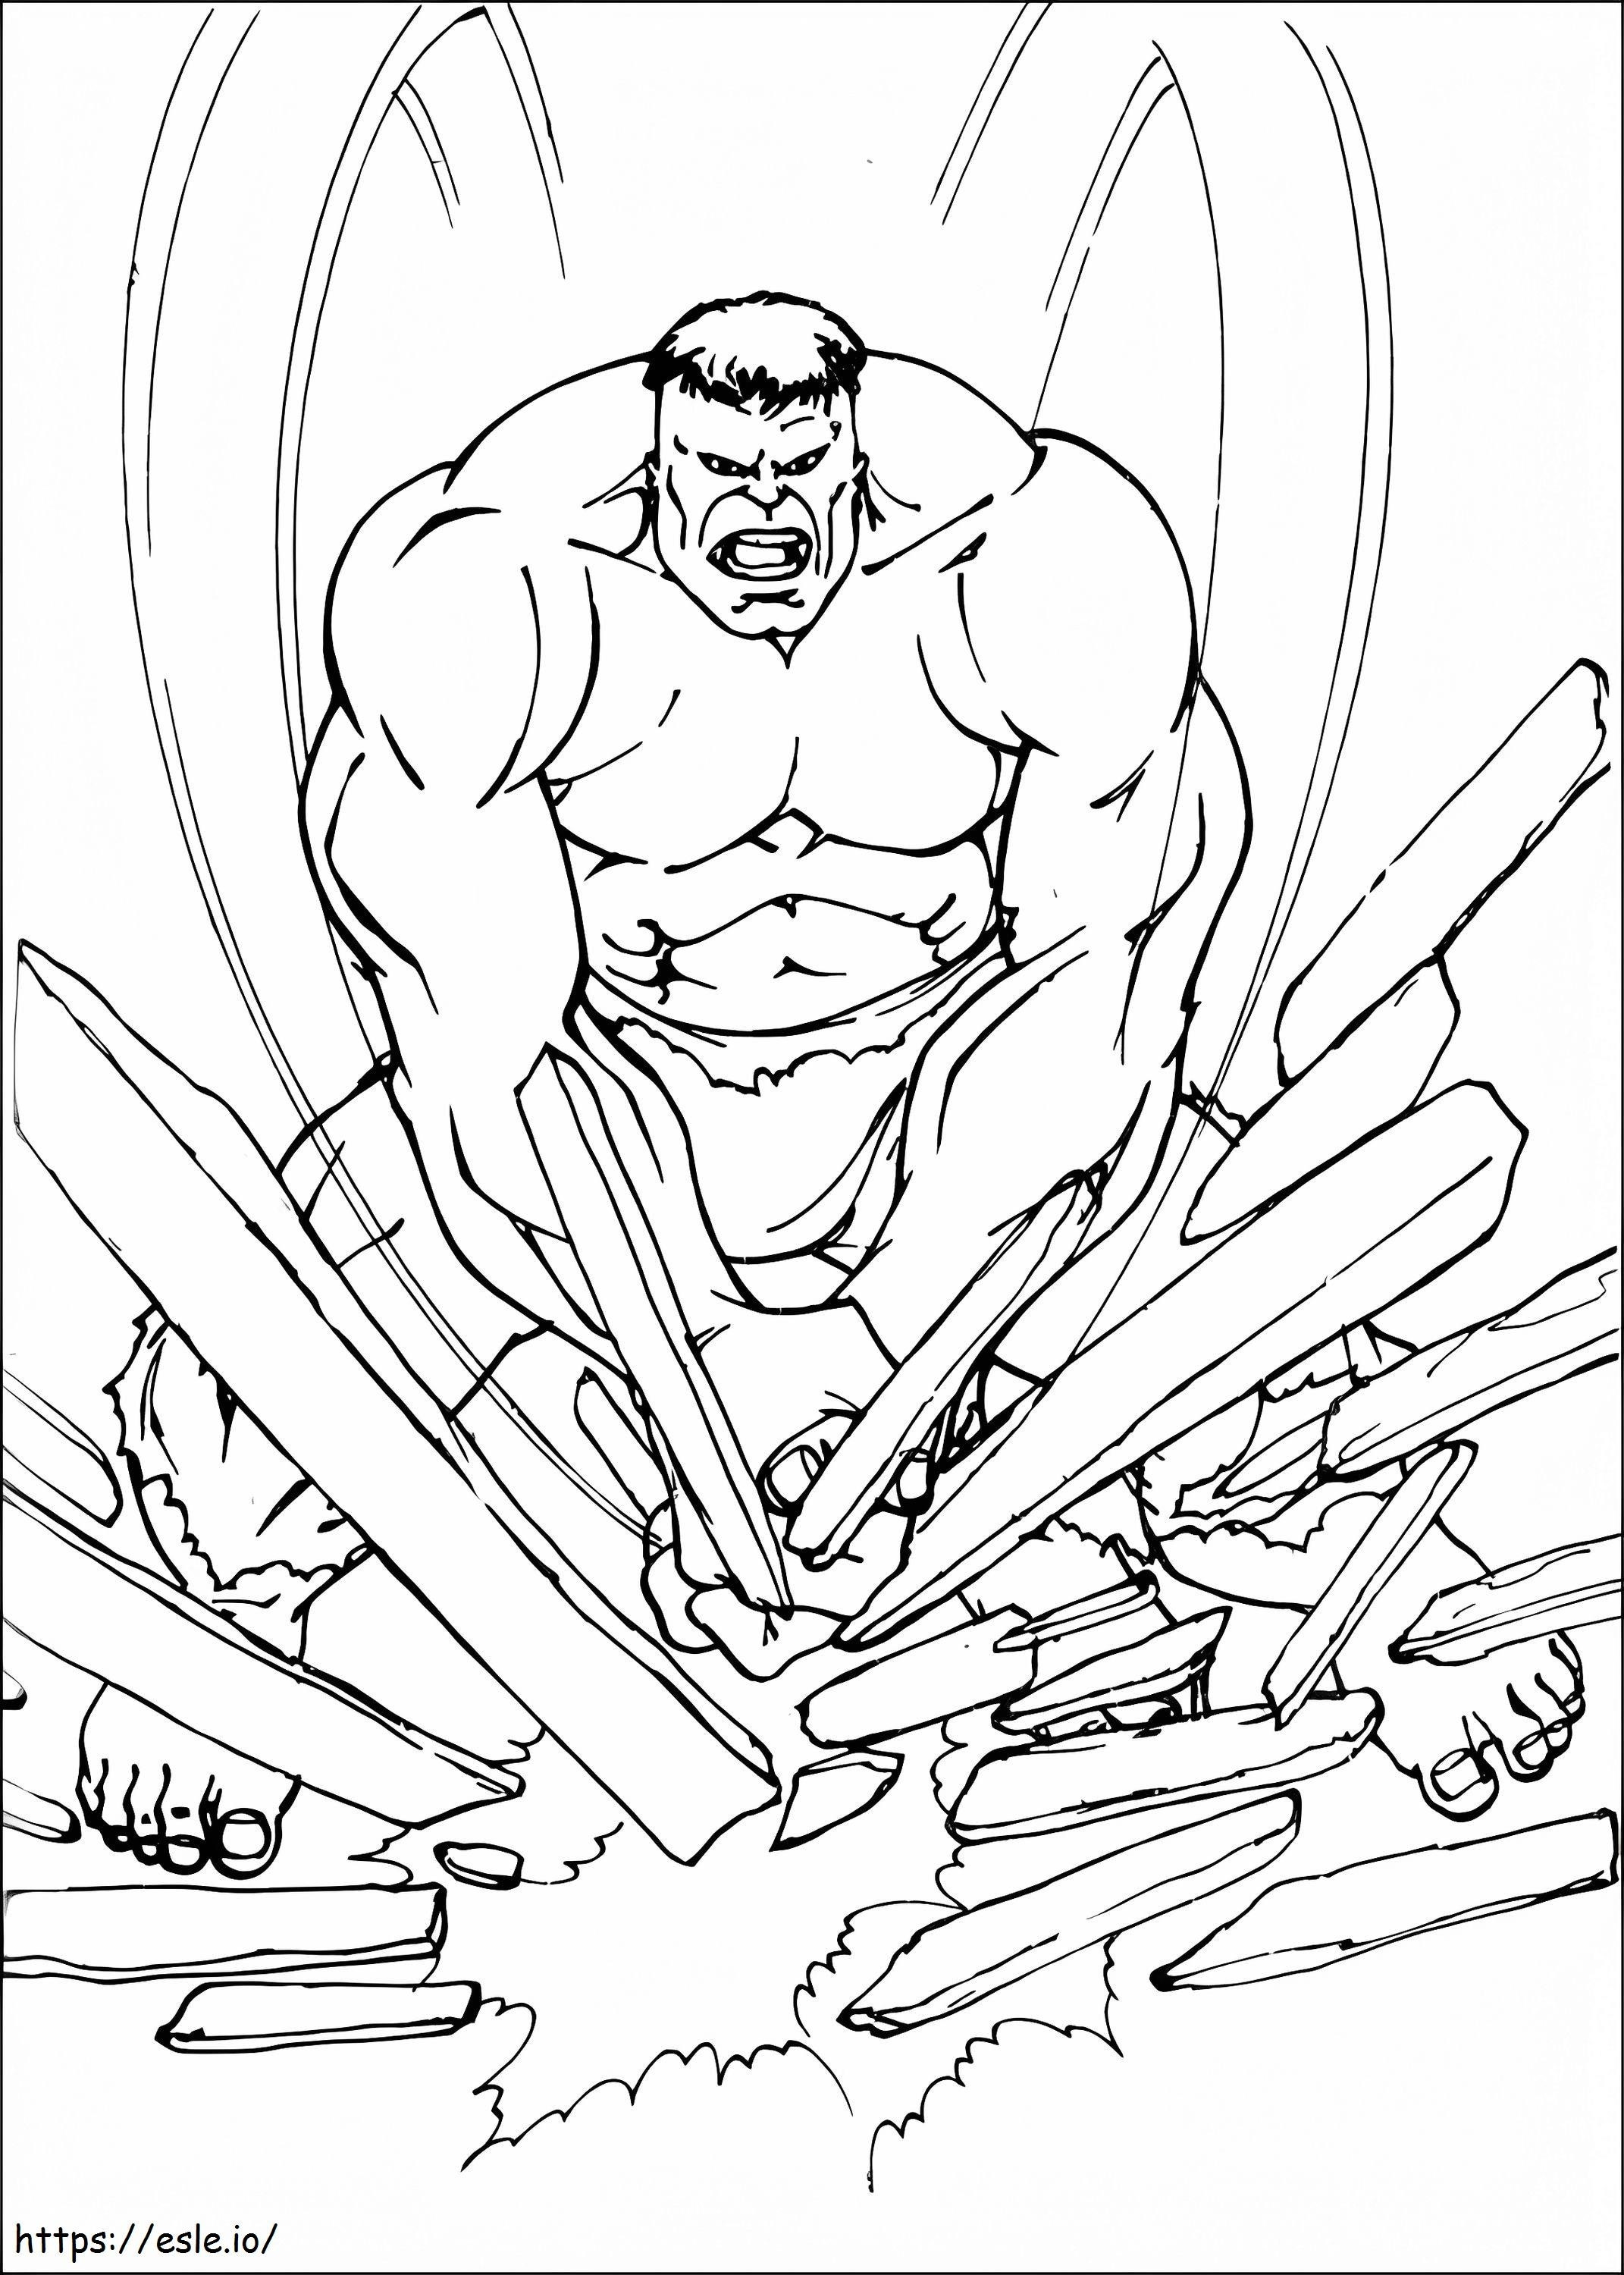 Hulk-Holzschnitt ausmalbilder